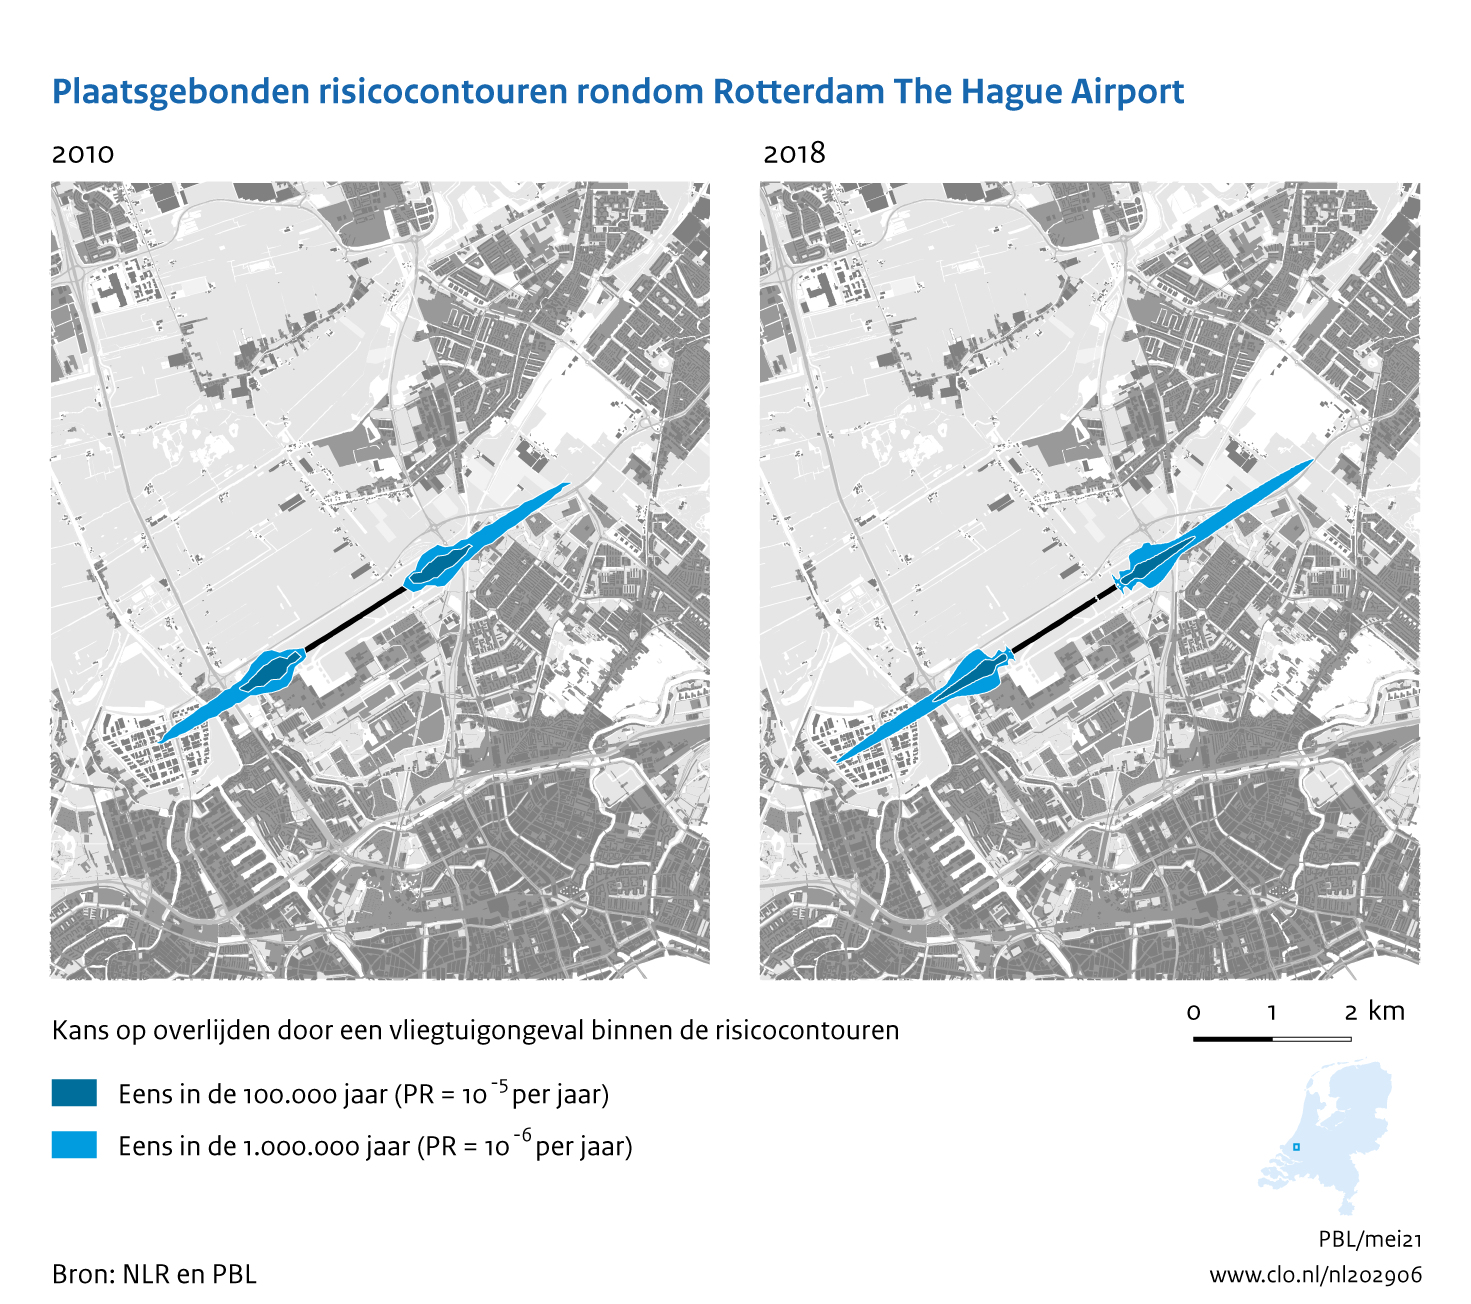 Figuur Plaatsgebonden risicocontouren rondom Rotterdam The Hague  Airport, 2010-2018. In de rest van de tekst wordt deze figuur uitgebreider uitgelegd.